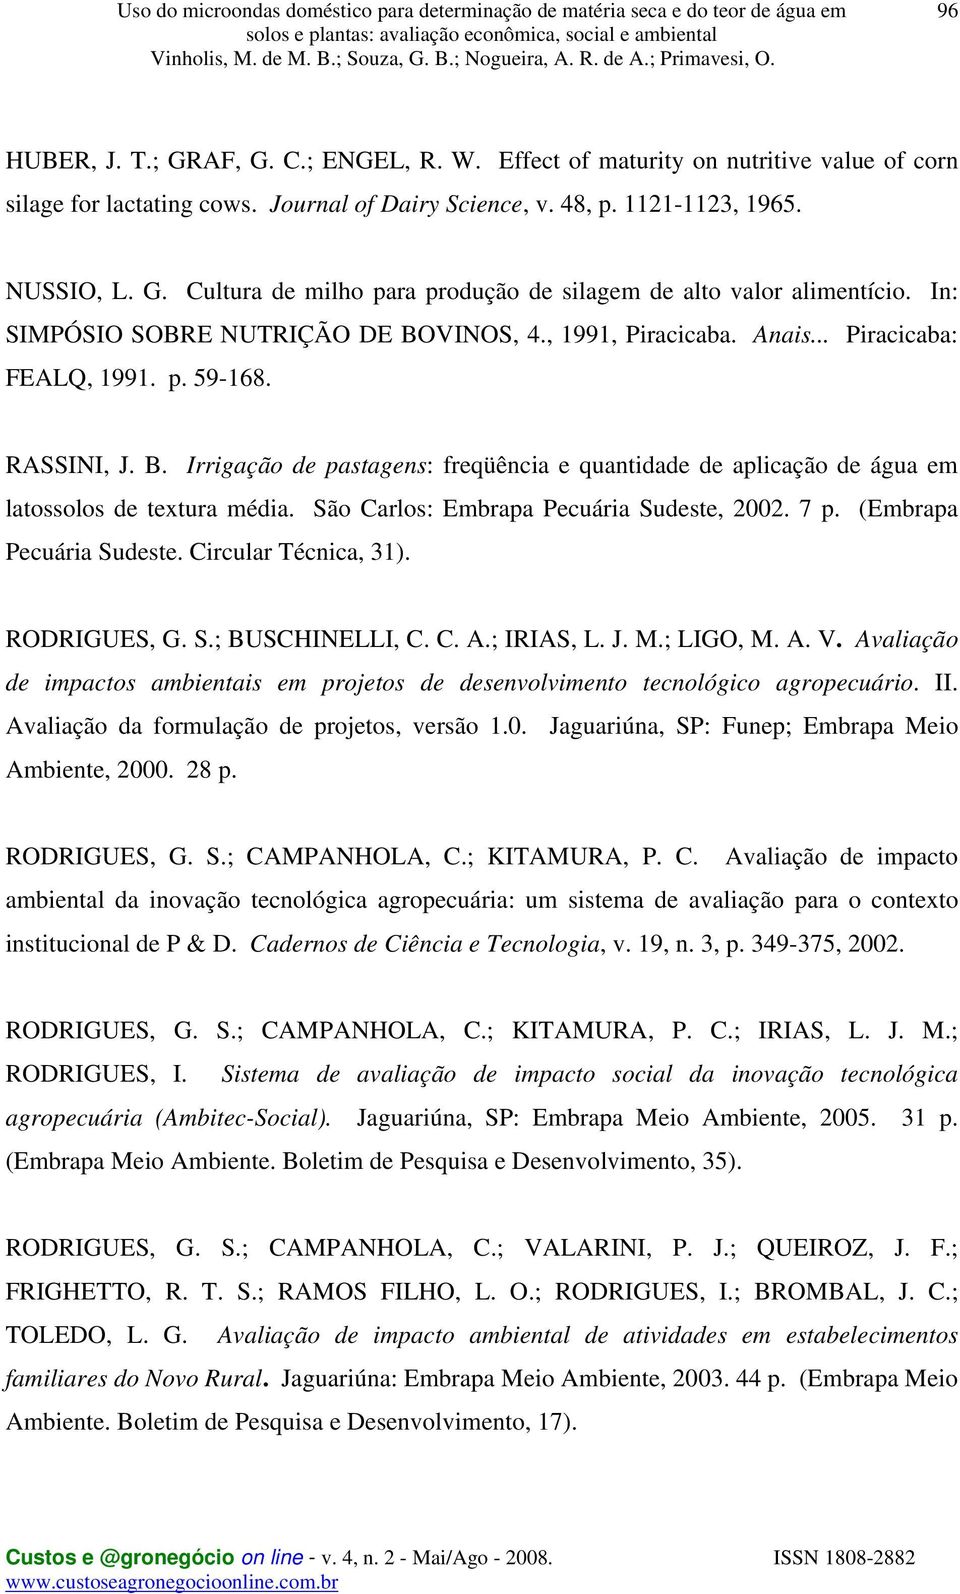 São Carlos: Embrapa Pecuária Sudeste, 2002. 7 p. (Embrapa Pecuária Sudeste. Circular Técnica, 31). RODRIGUES, G. S.; BUSCHINELLI, C. C. A.; IRIAS, L. J. M.; LIGO, M. A. V.